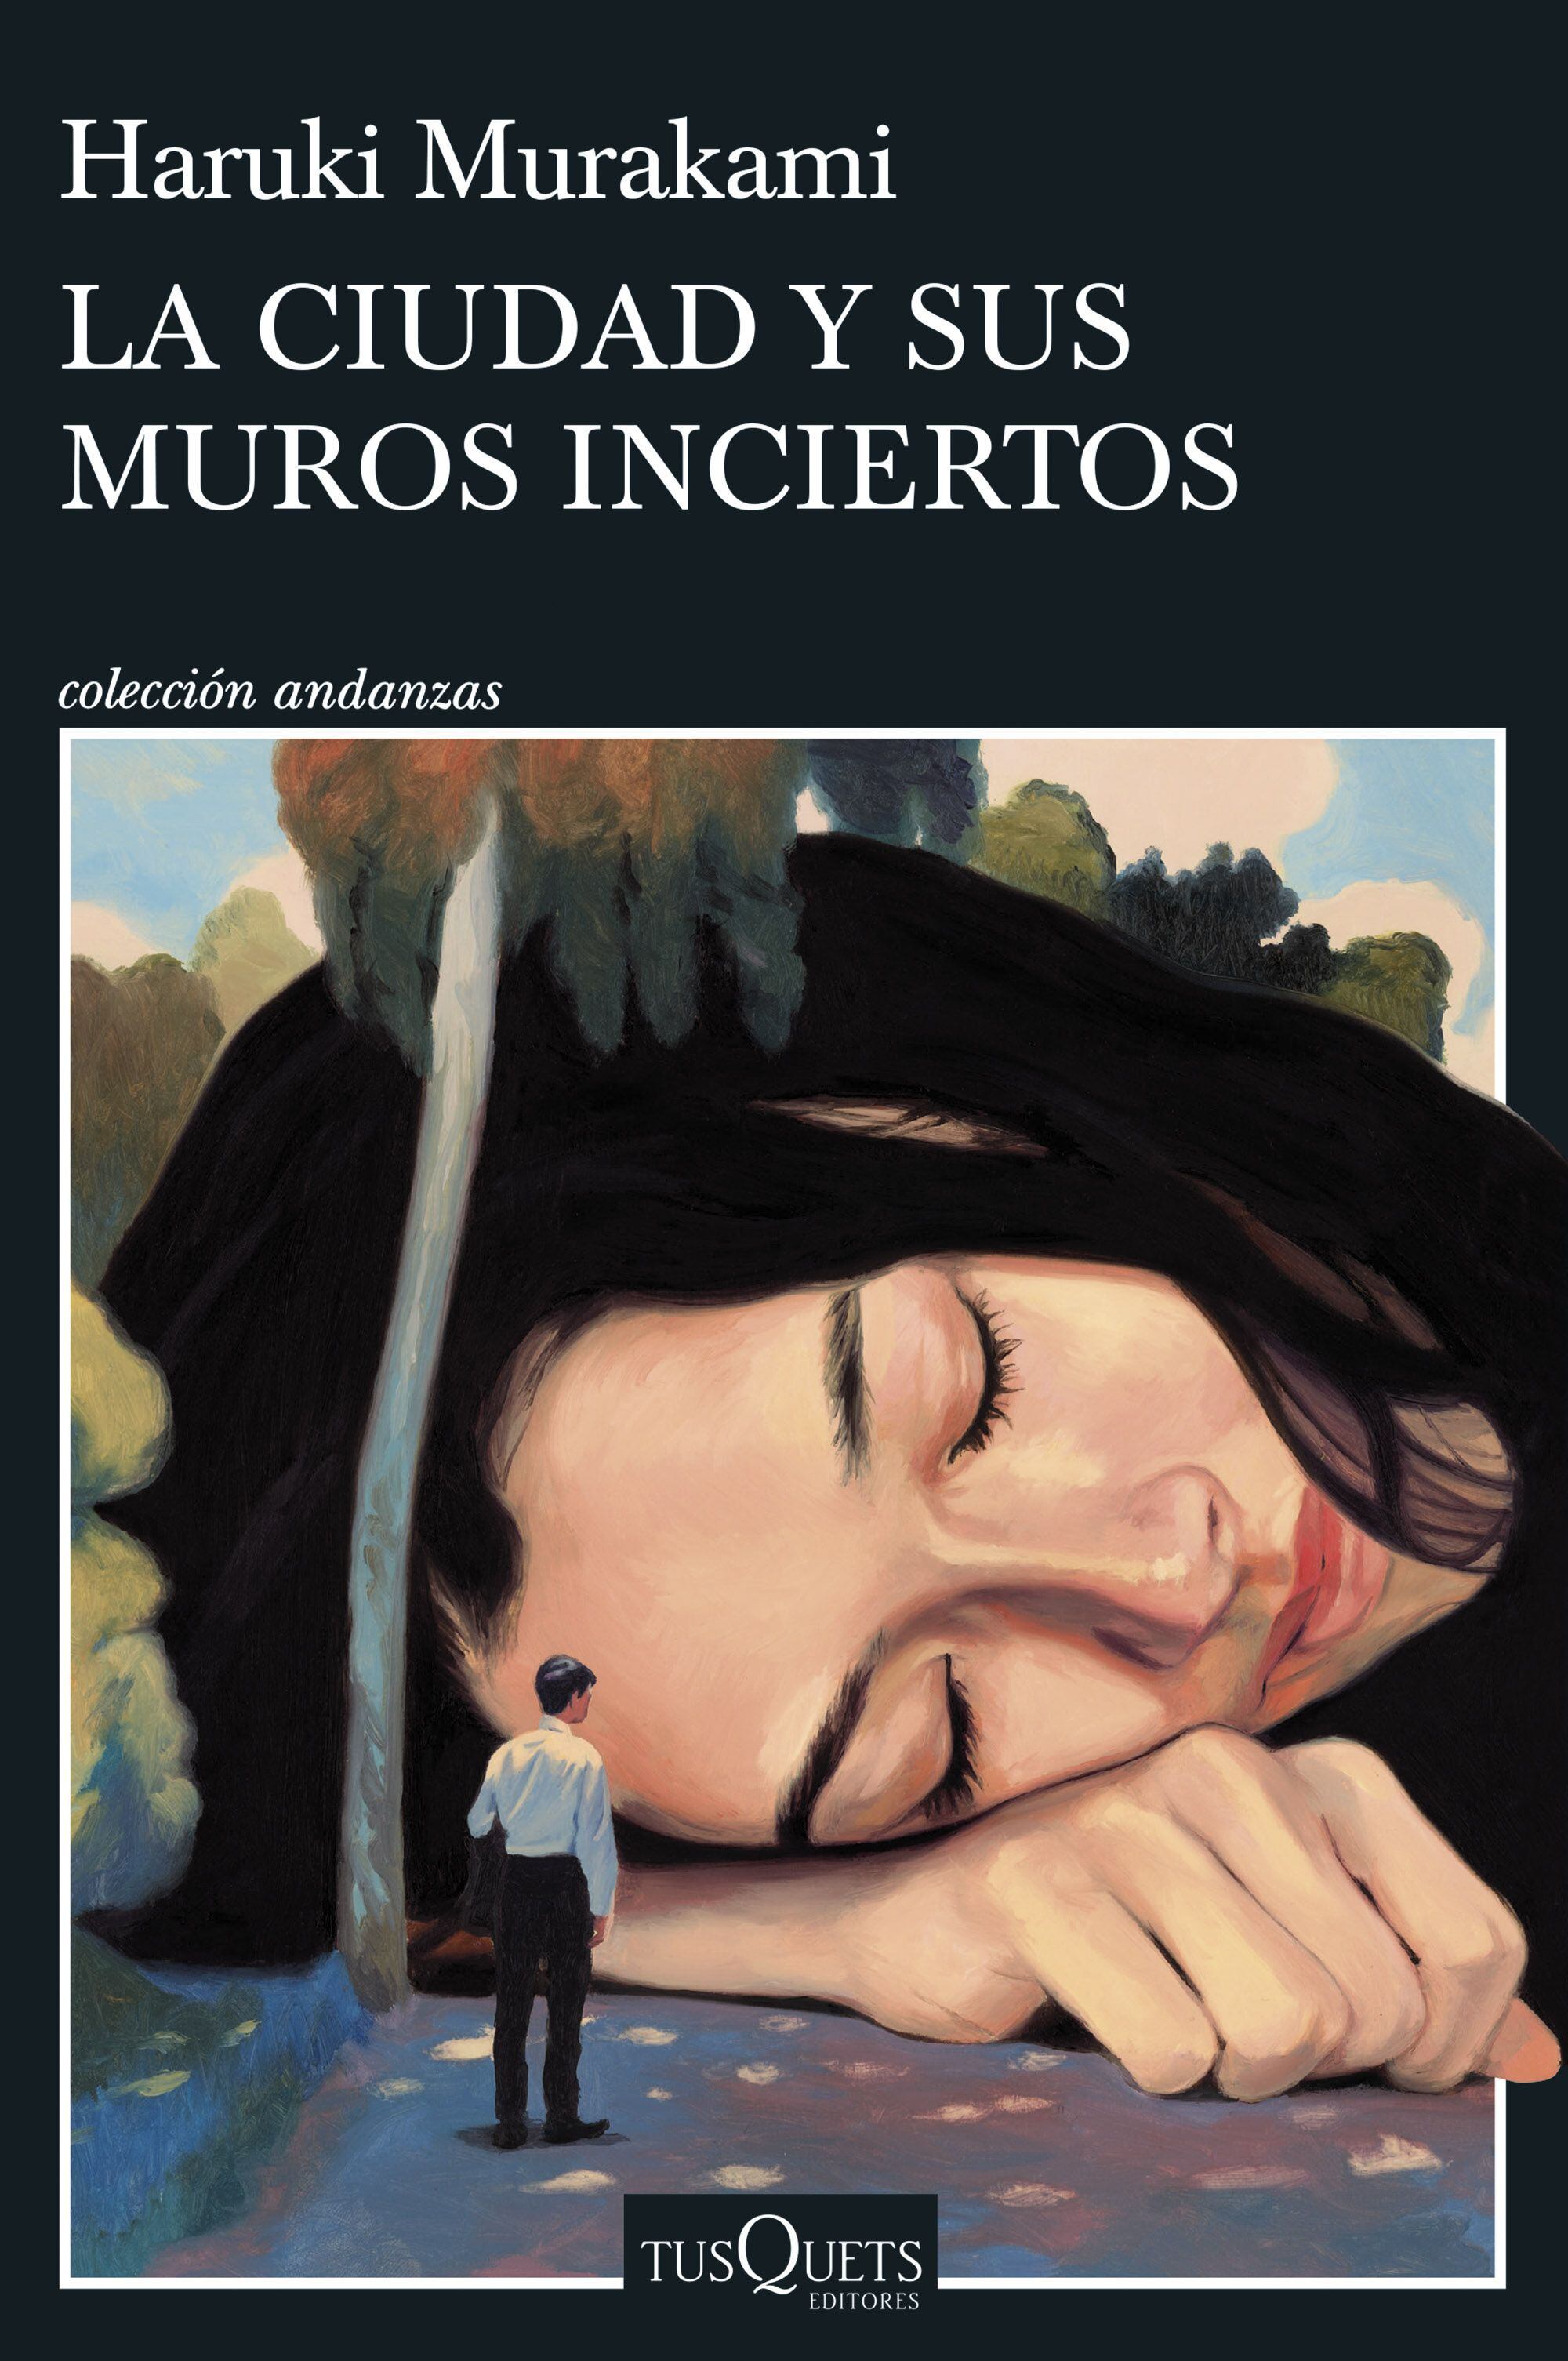 'La ciudad y sus muros inciertos', novela más reciente de Haruki Murakami, publicada por Tusquets.